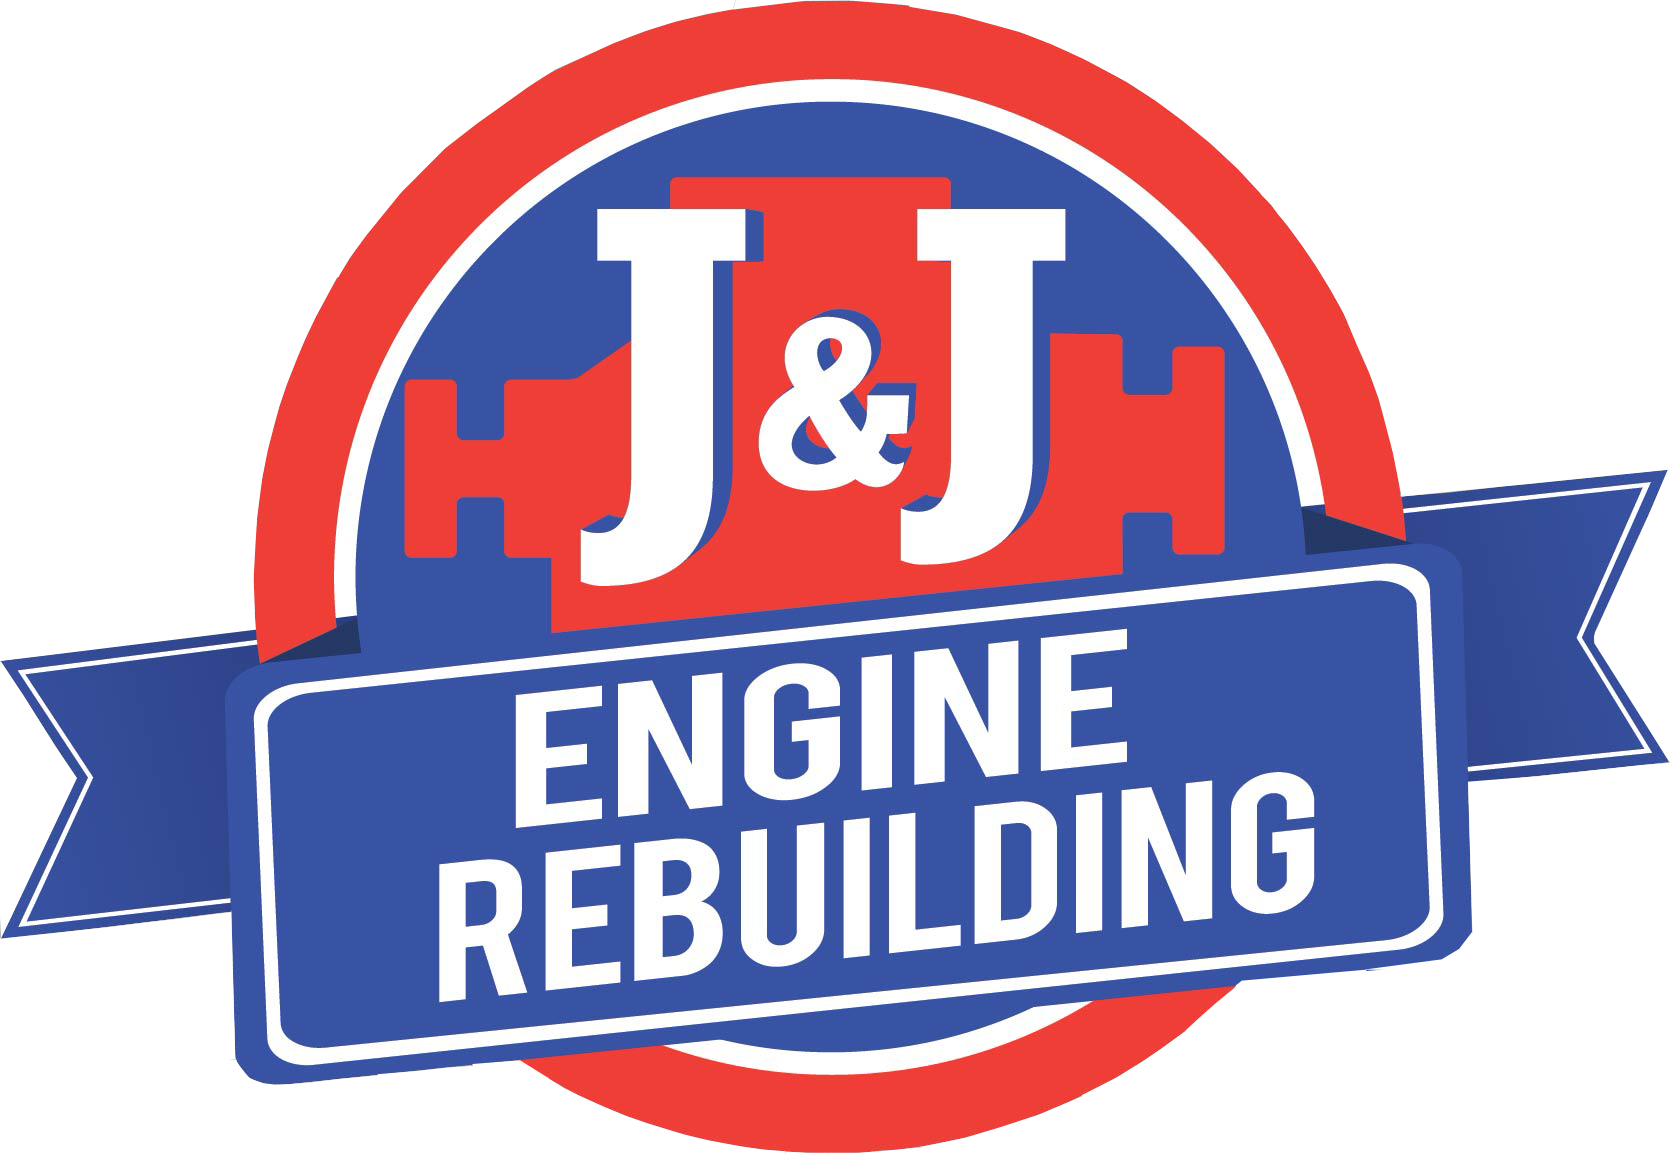 J & J Engine Rebuilding